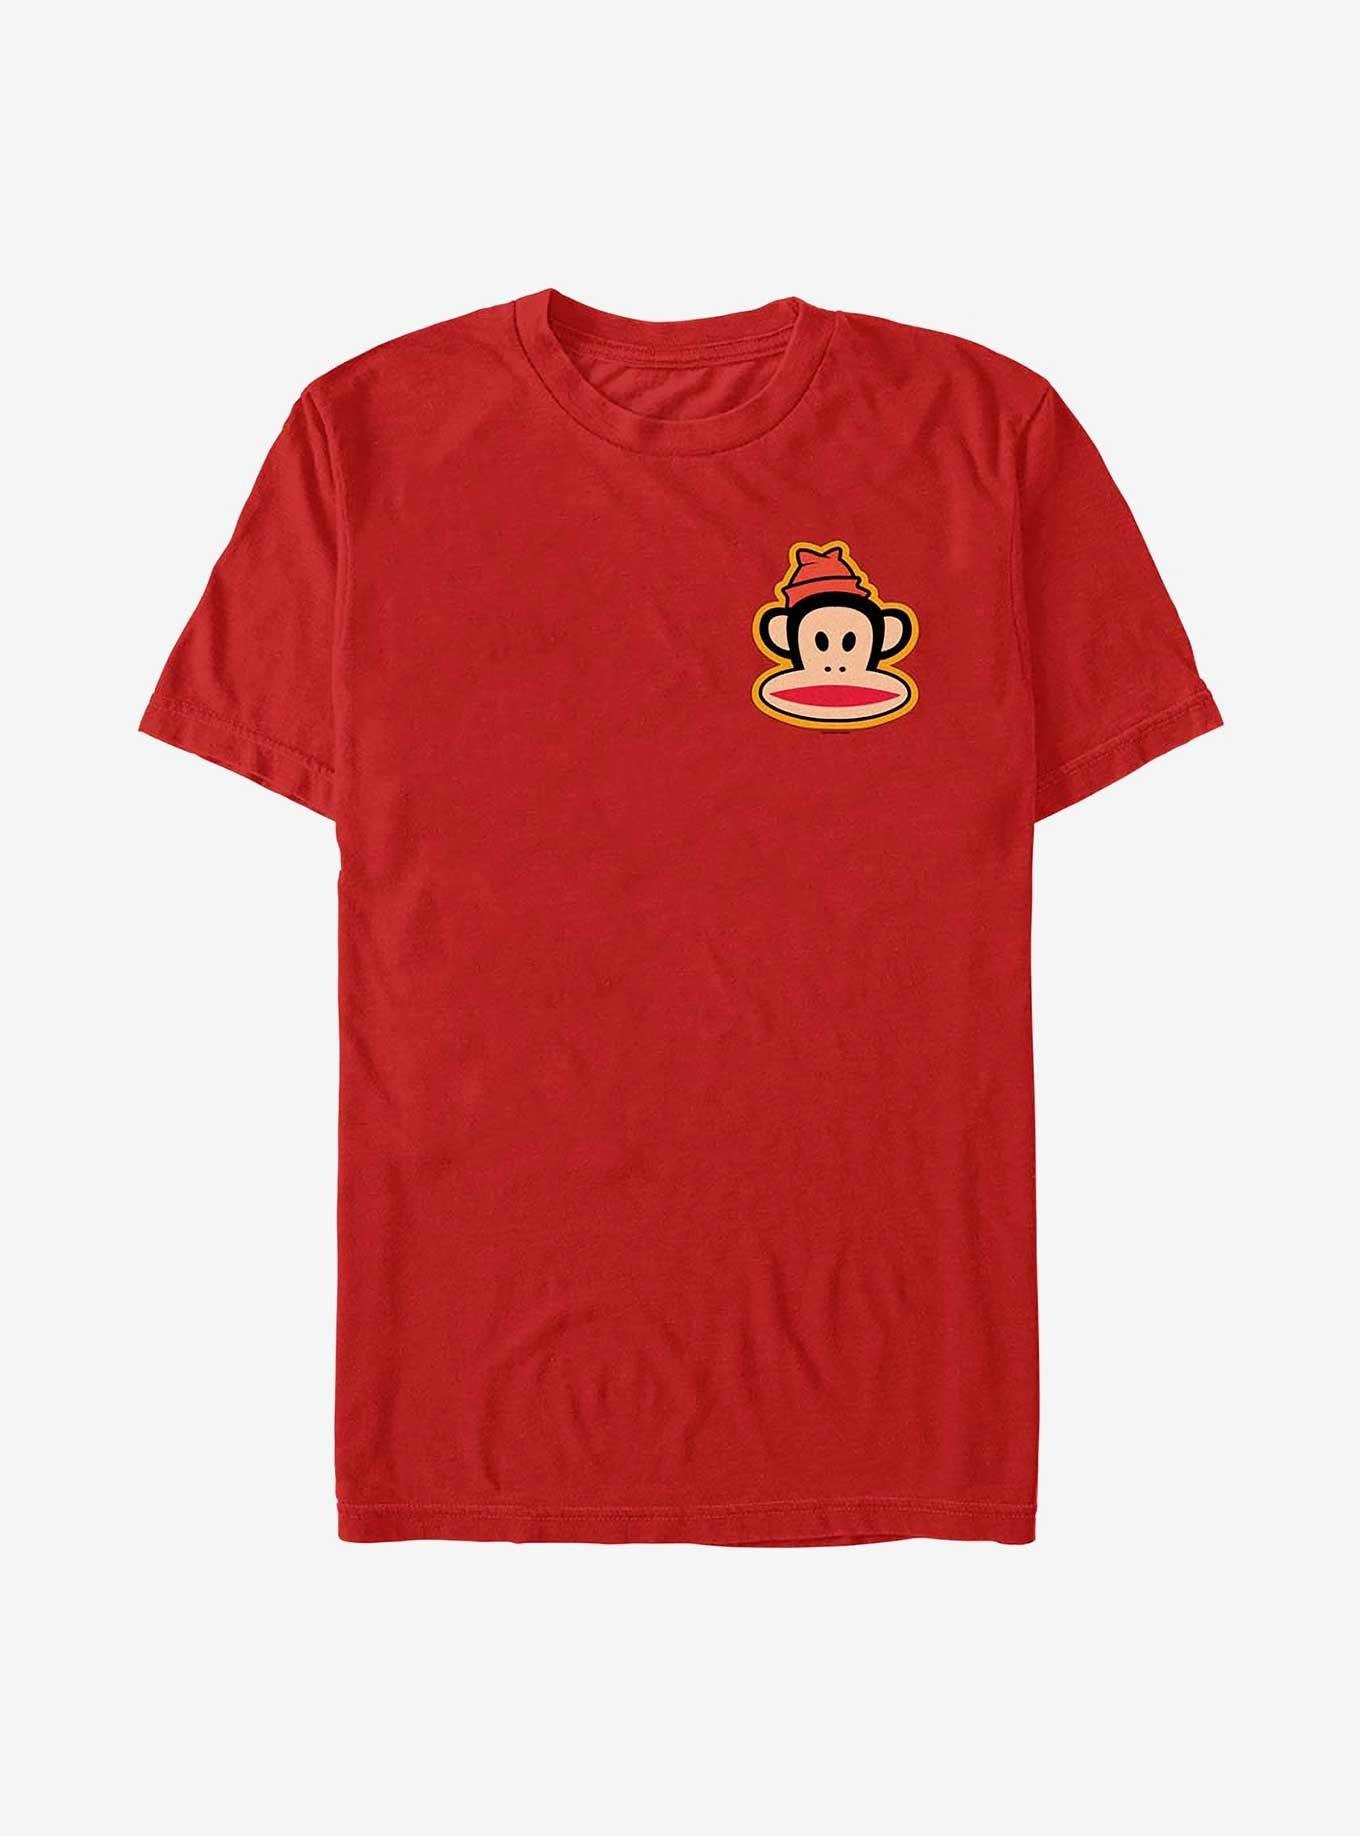 Paul Frank Small Julius Beanie T-Shirt, RED, hi-res